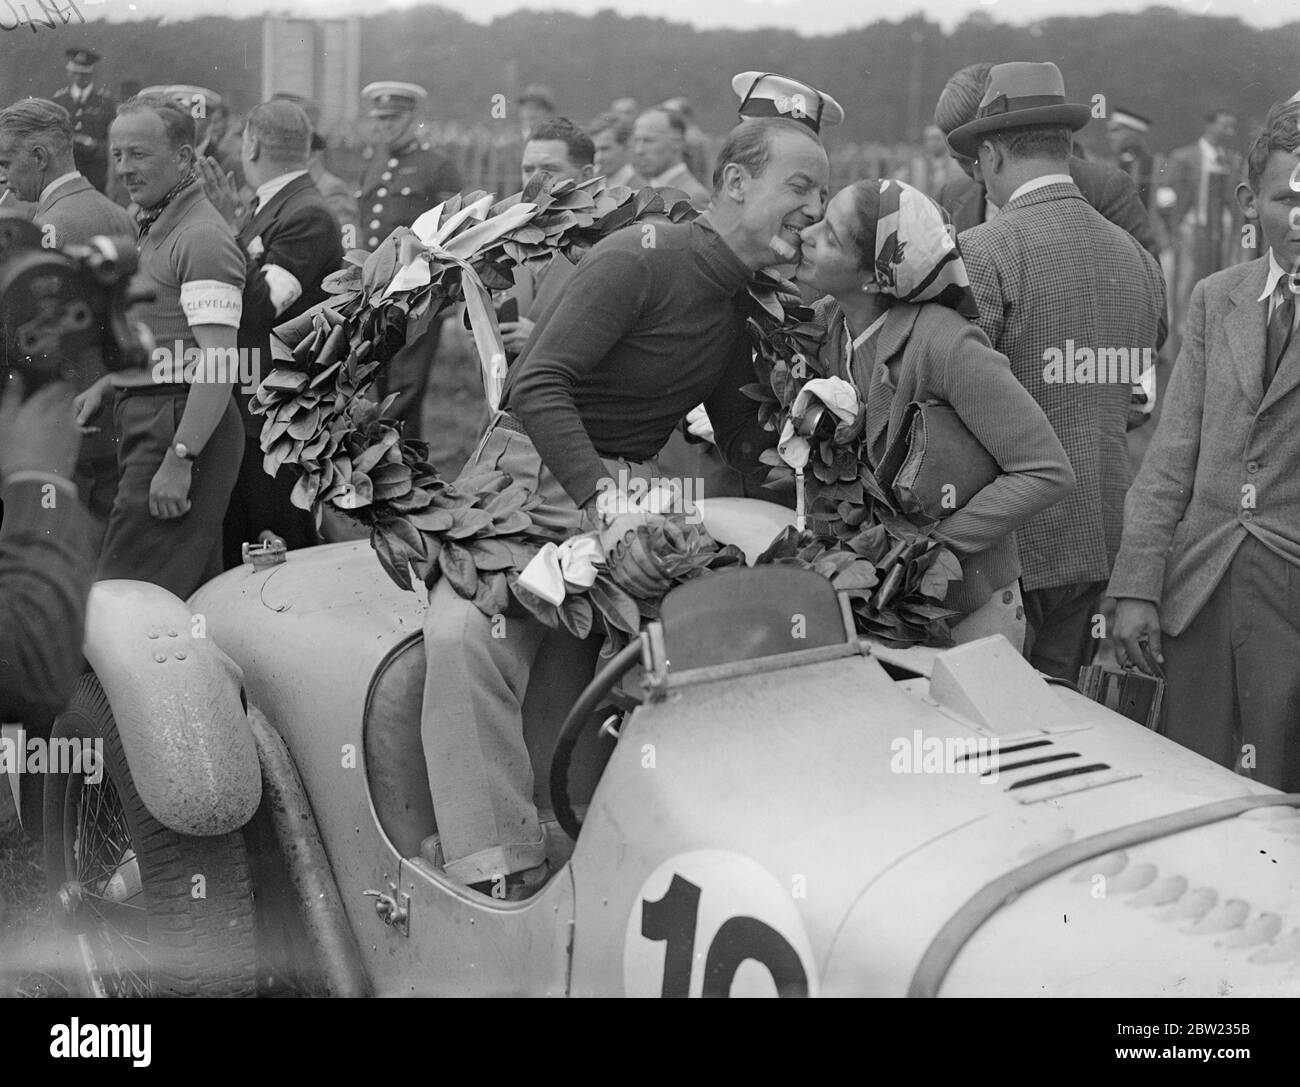 Gianfranco Cometti war mit Lorbeeren und wurde von seinem wofe geküsst, nachdem er beim internationalen Touristenrennen des Royal Automobilclubs Trophy im Donington Park in der Nähe von Derby die 312 Meilen in vier Stunden 35 Minuten 27 Sekunden bei einer Durchschnittsgeschwindigkeit von 68.7 Meilen pro Stunde zurücklegte. Das war das erste Mal, dass das Rennen in England ab 1928 1936 stattgefunden hatte. September 1937. Stockfoto